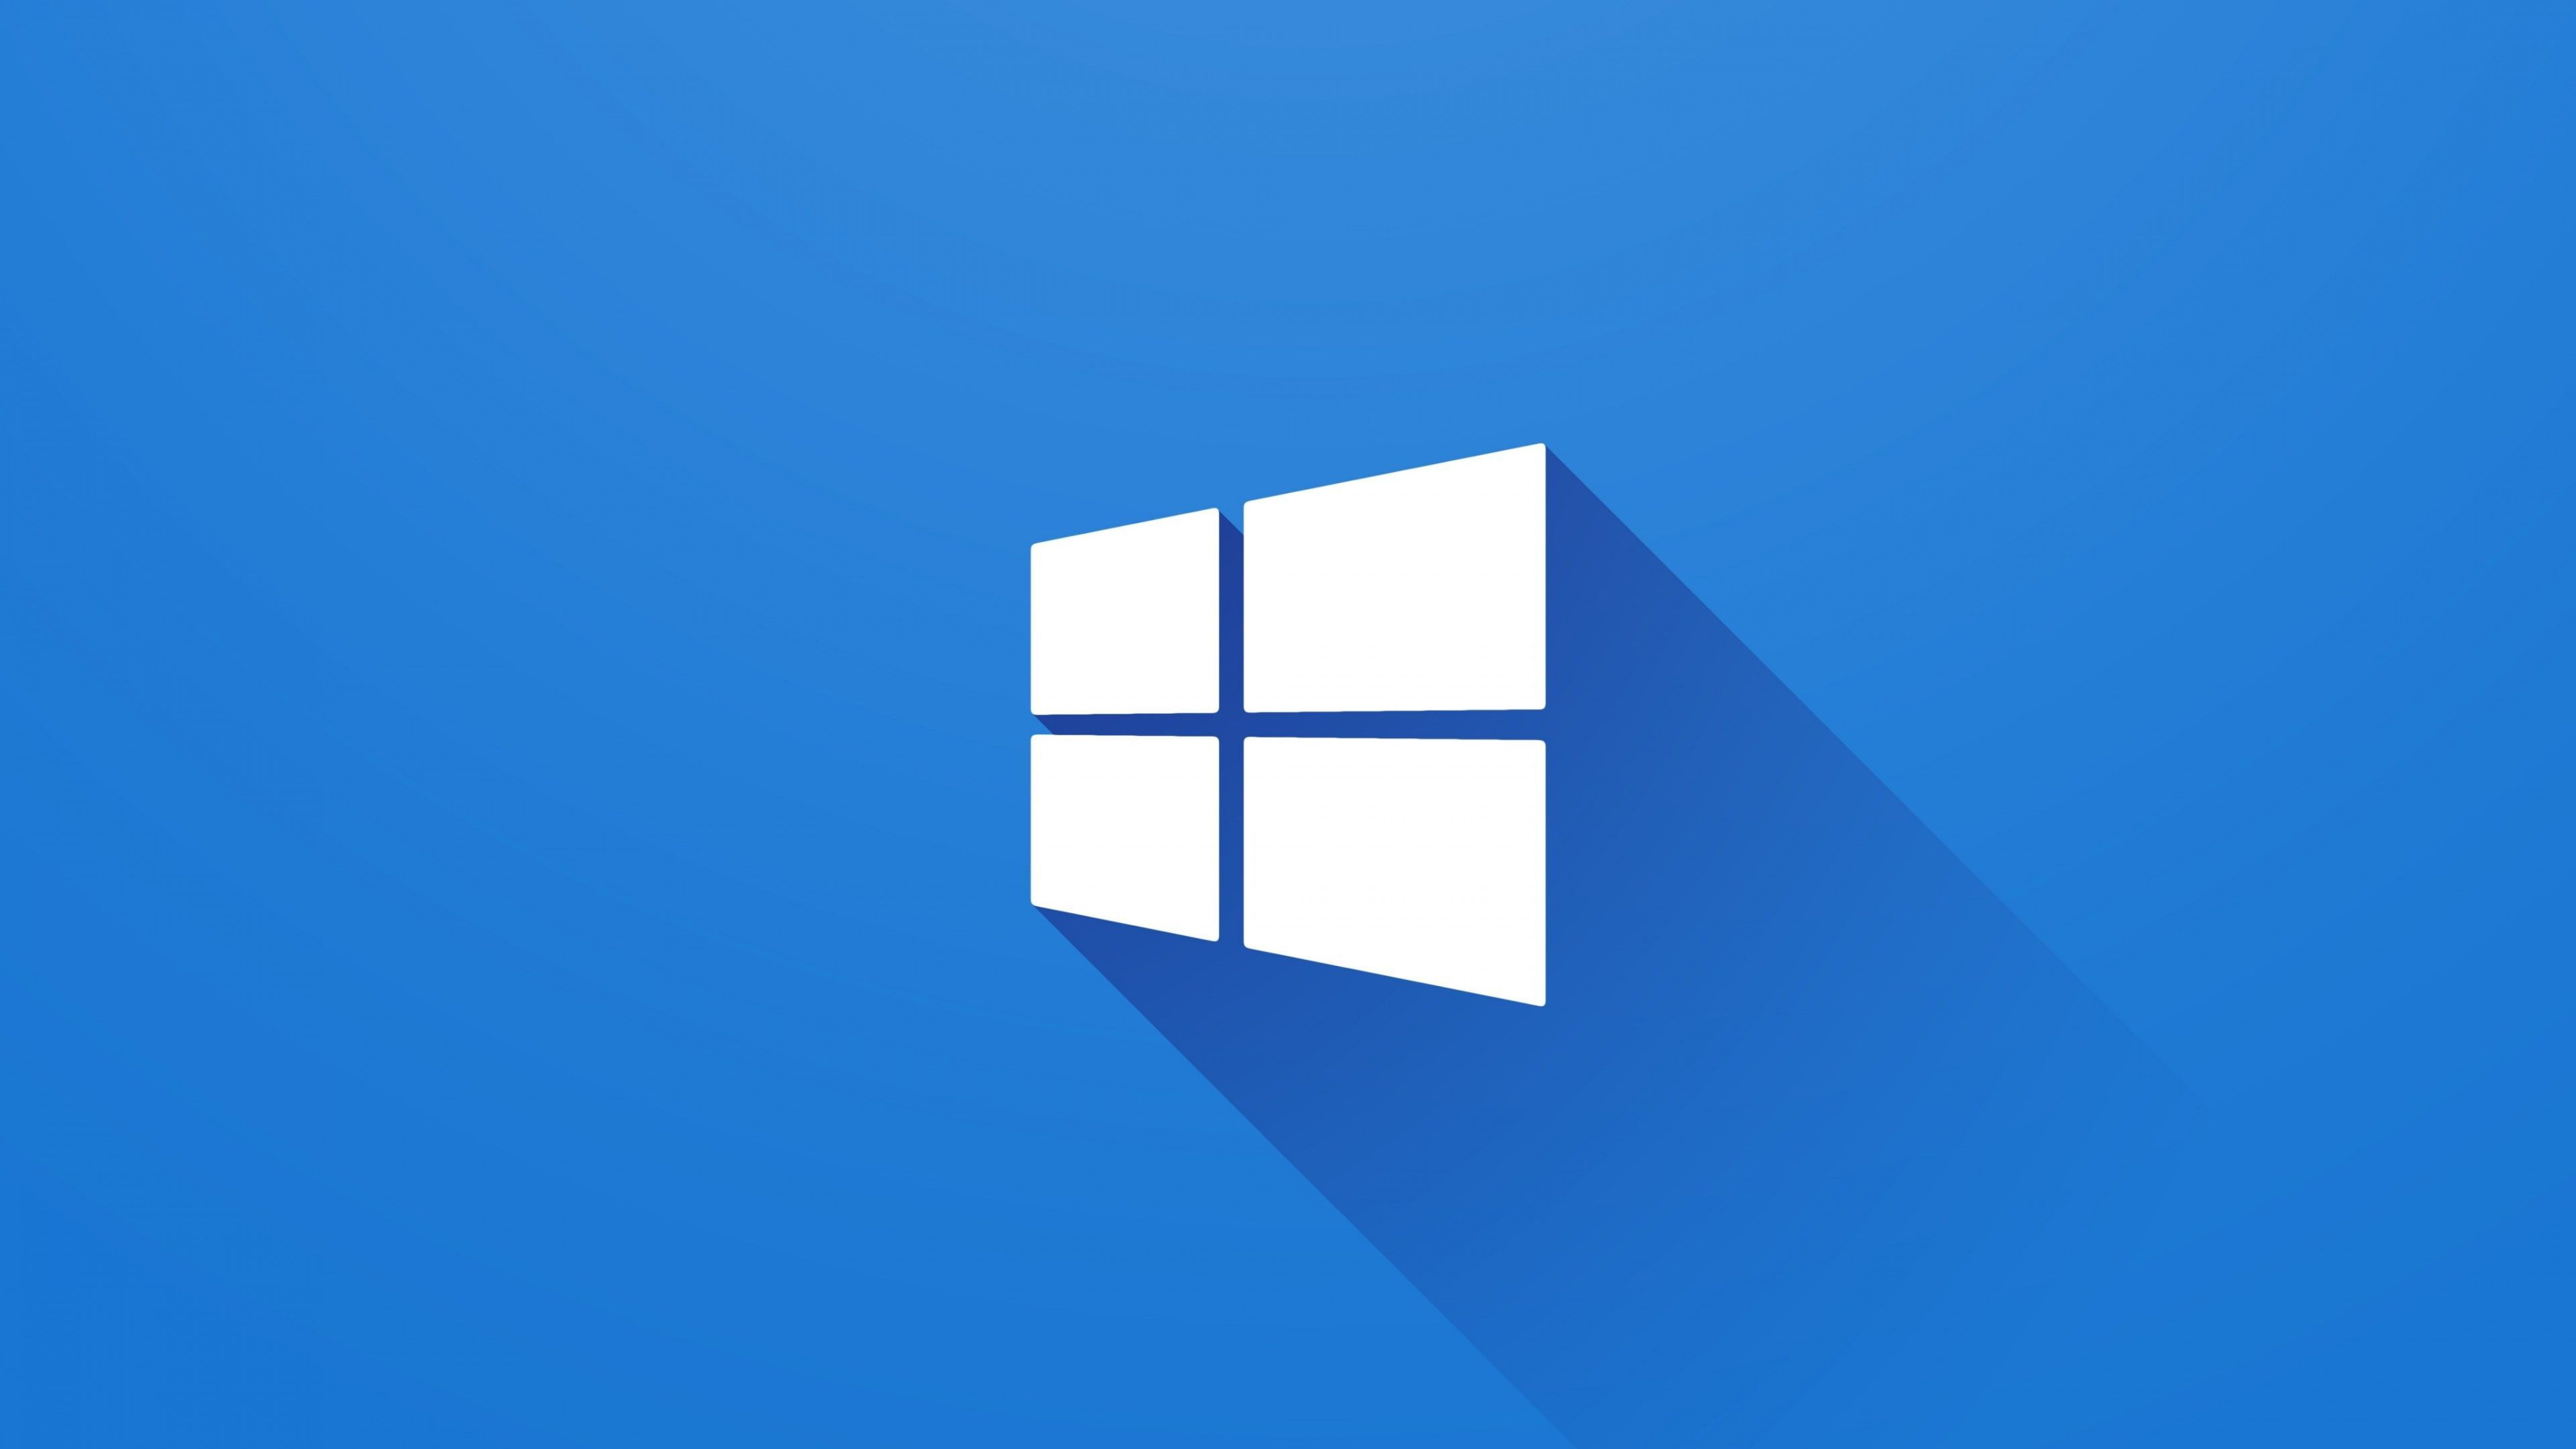 Bạn đang muốn tìm kiếm logo Windows để trang trí cho máy tính của mình? Hãy tải ngay logo Windows tuyệt đẹp nhất để tạo nên một hình ảnh độc đáo và cá tính. Logo Windows sẽ giúp bạn thể hiện phong cách và tính cách cá nhân của mình.